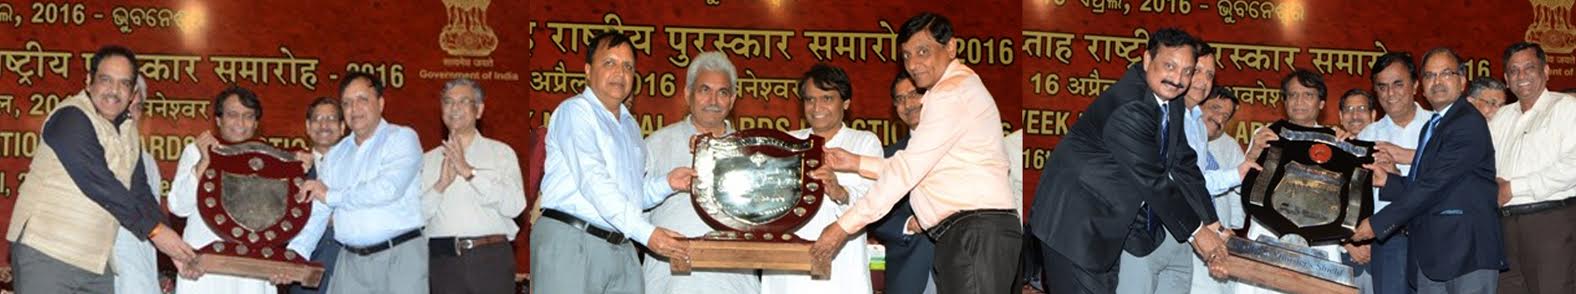 पश्चिम रेलवे ने माननीय रेल मंत्री से प्राप्त की 3 राष्ट्रीय शील्ड एवं 6 राष्ट्रीय पुरस्कार